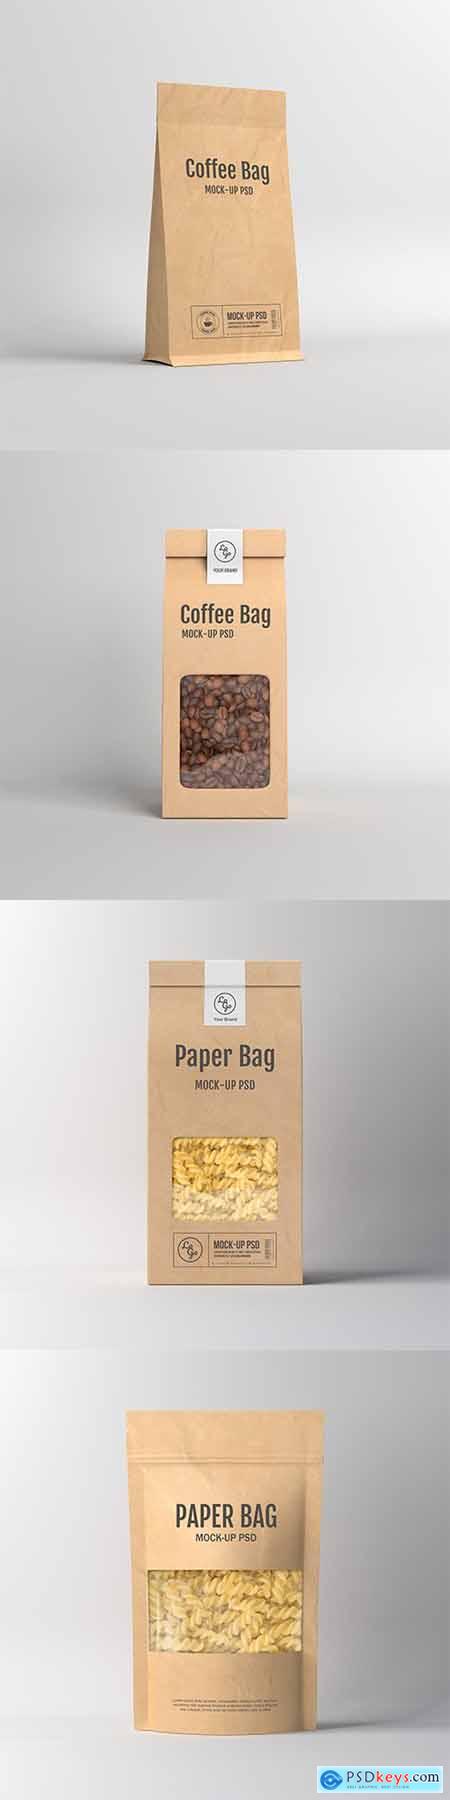 Paper Bag Packaging PSD Mockup Set